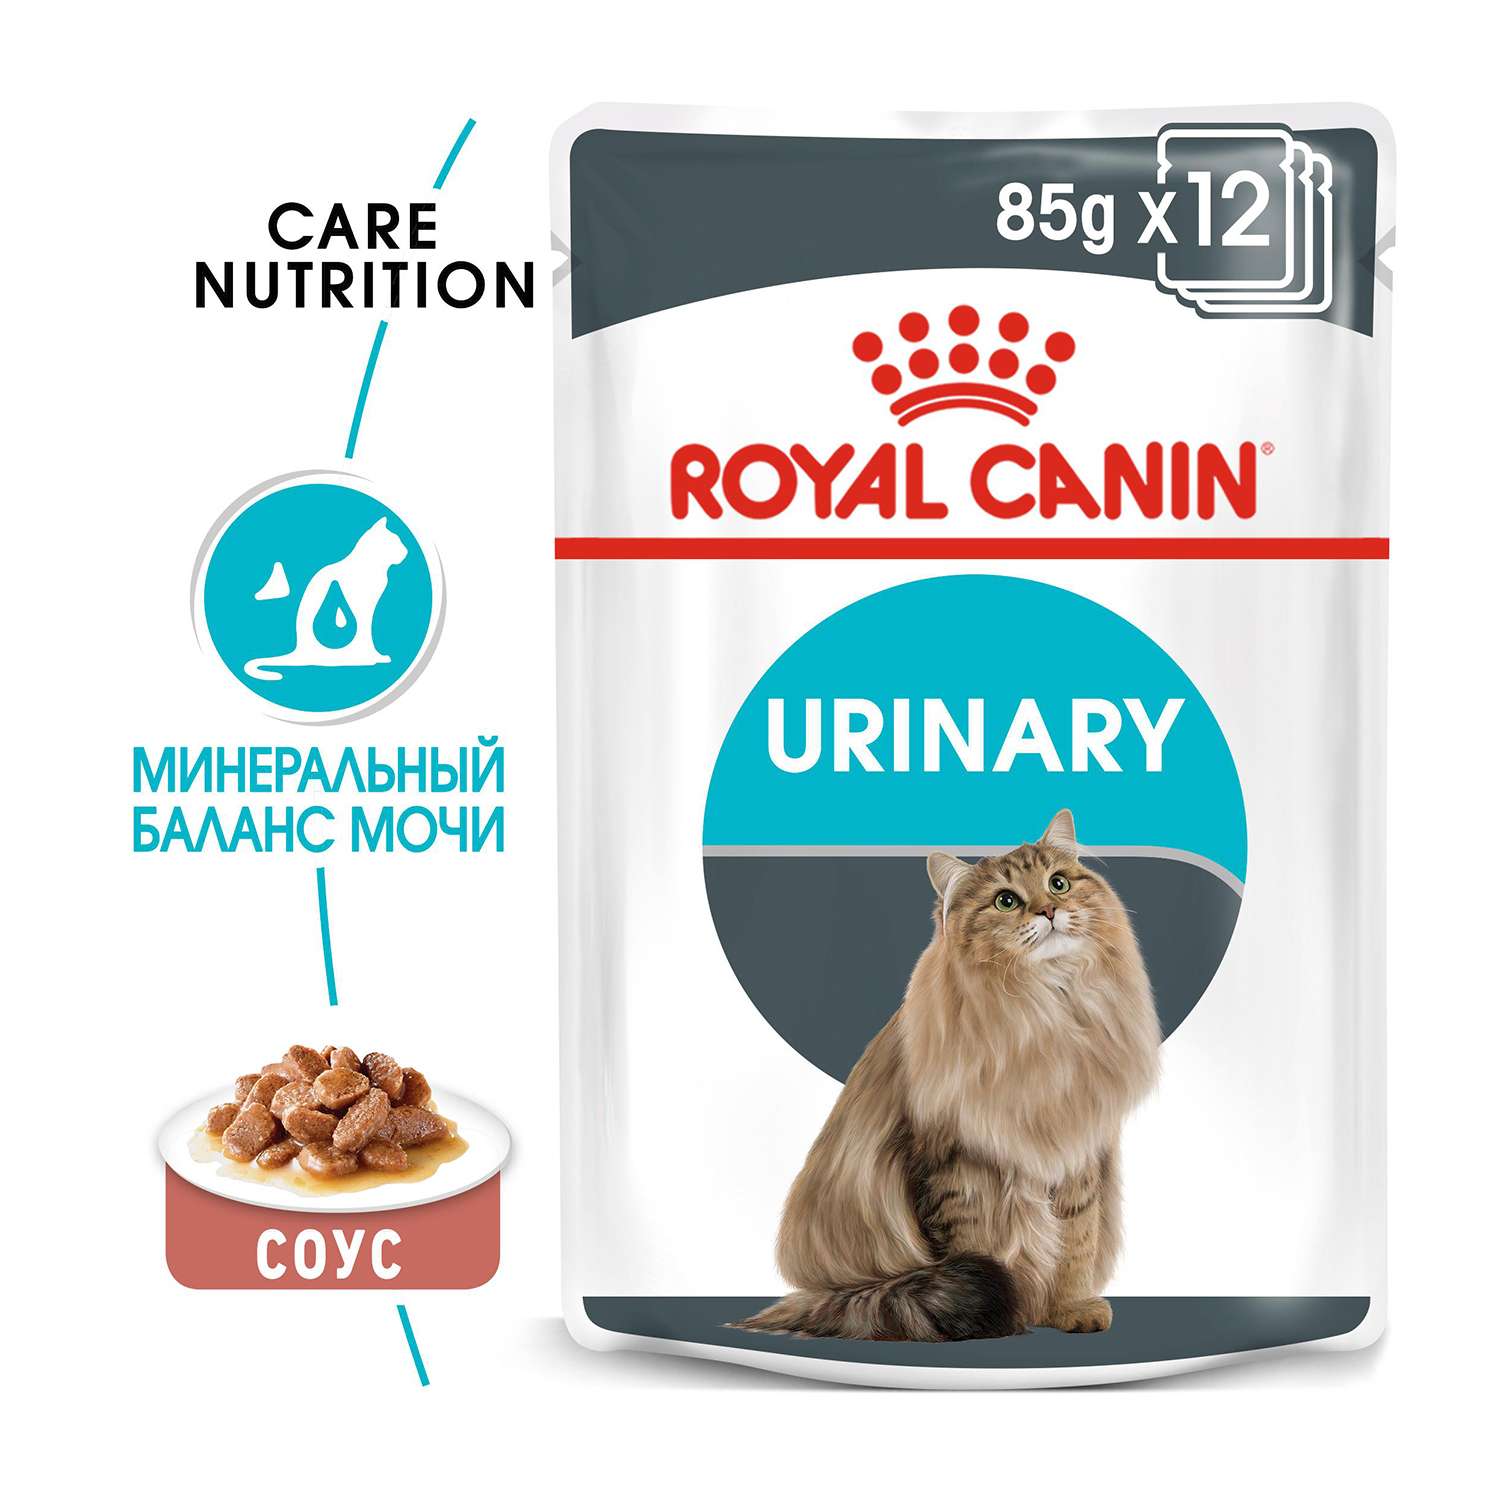 Корм влажный для кошек ROYAL CANIN Urinary Care 85г соус в целях профилактики мочекаменной болезни пауч - фото 1